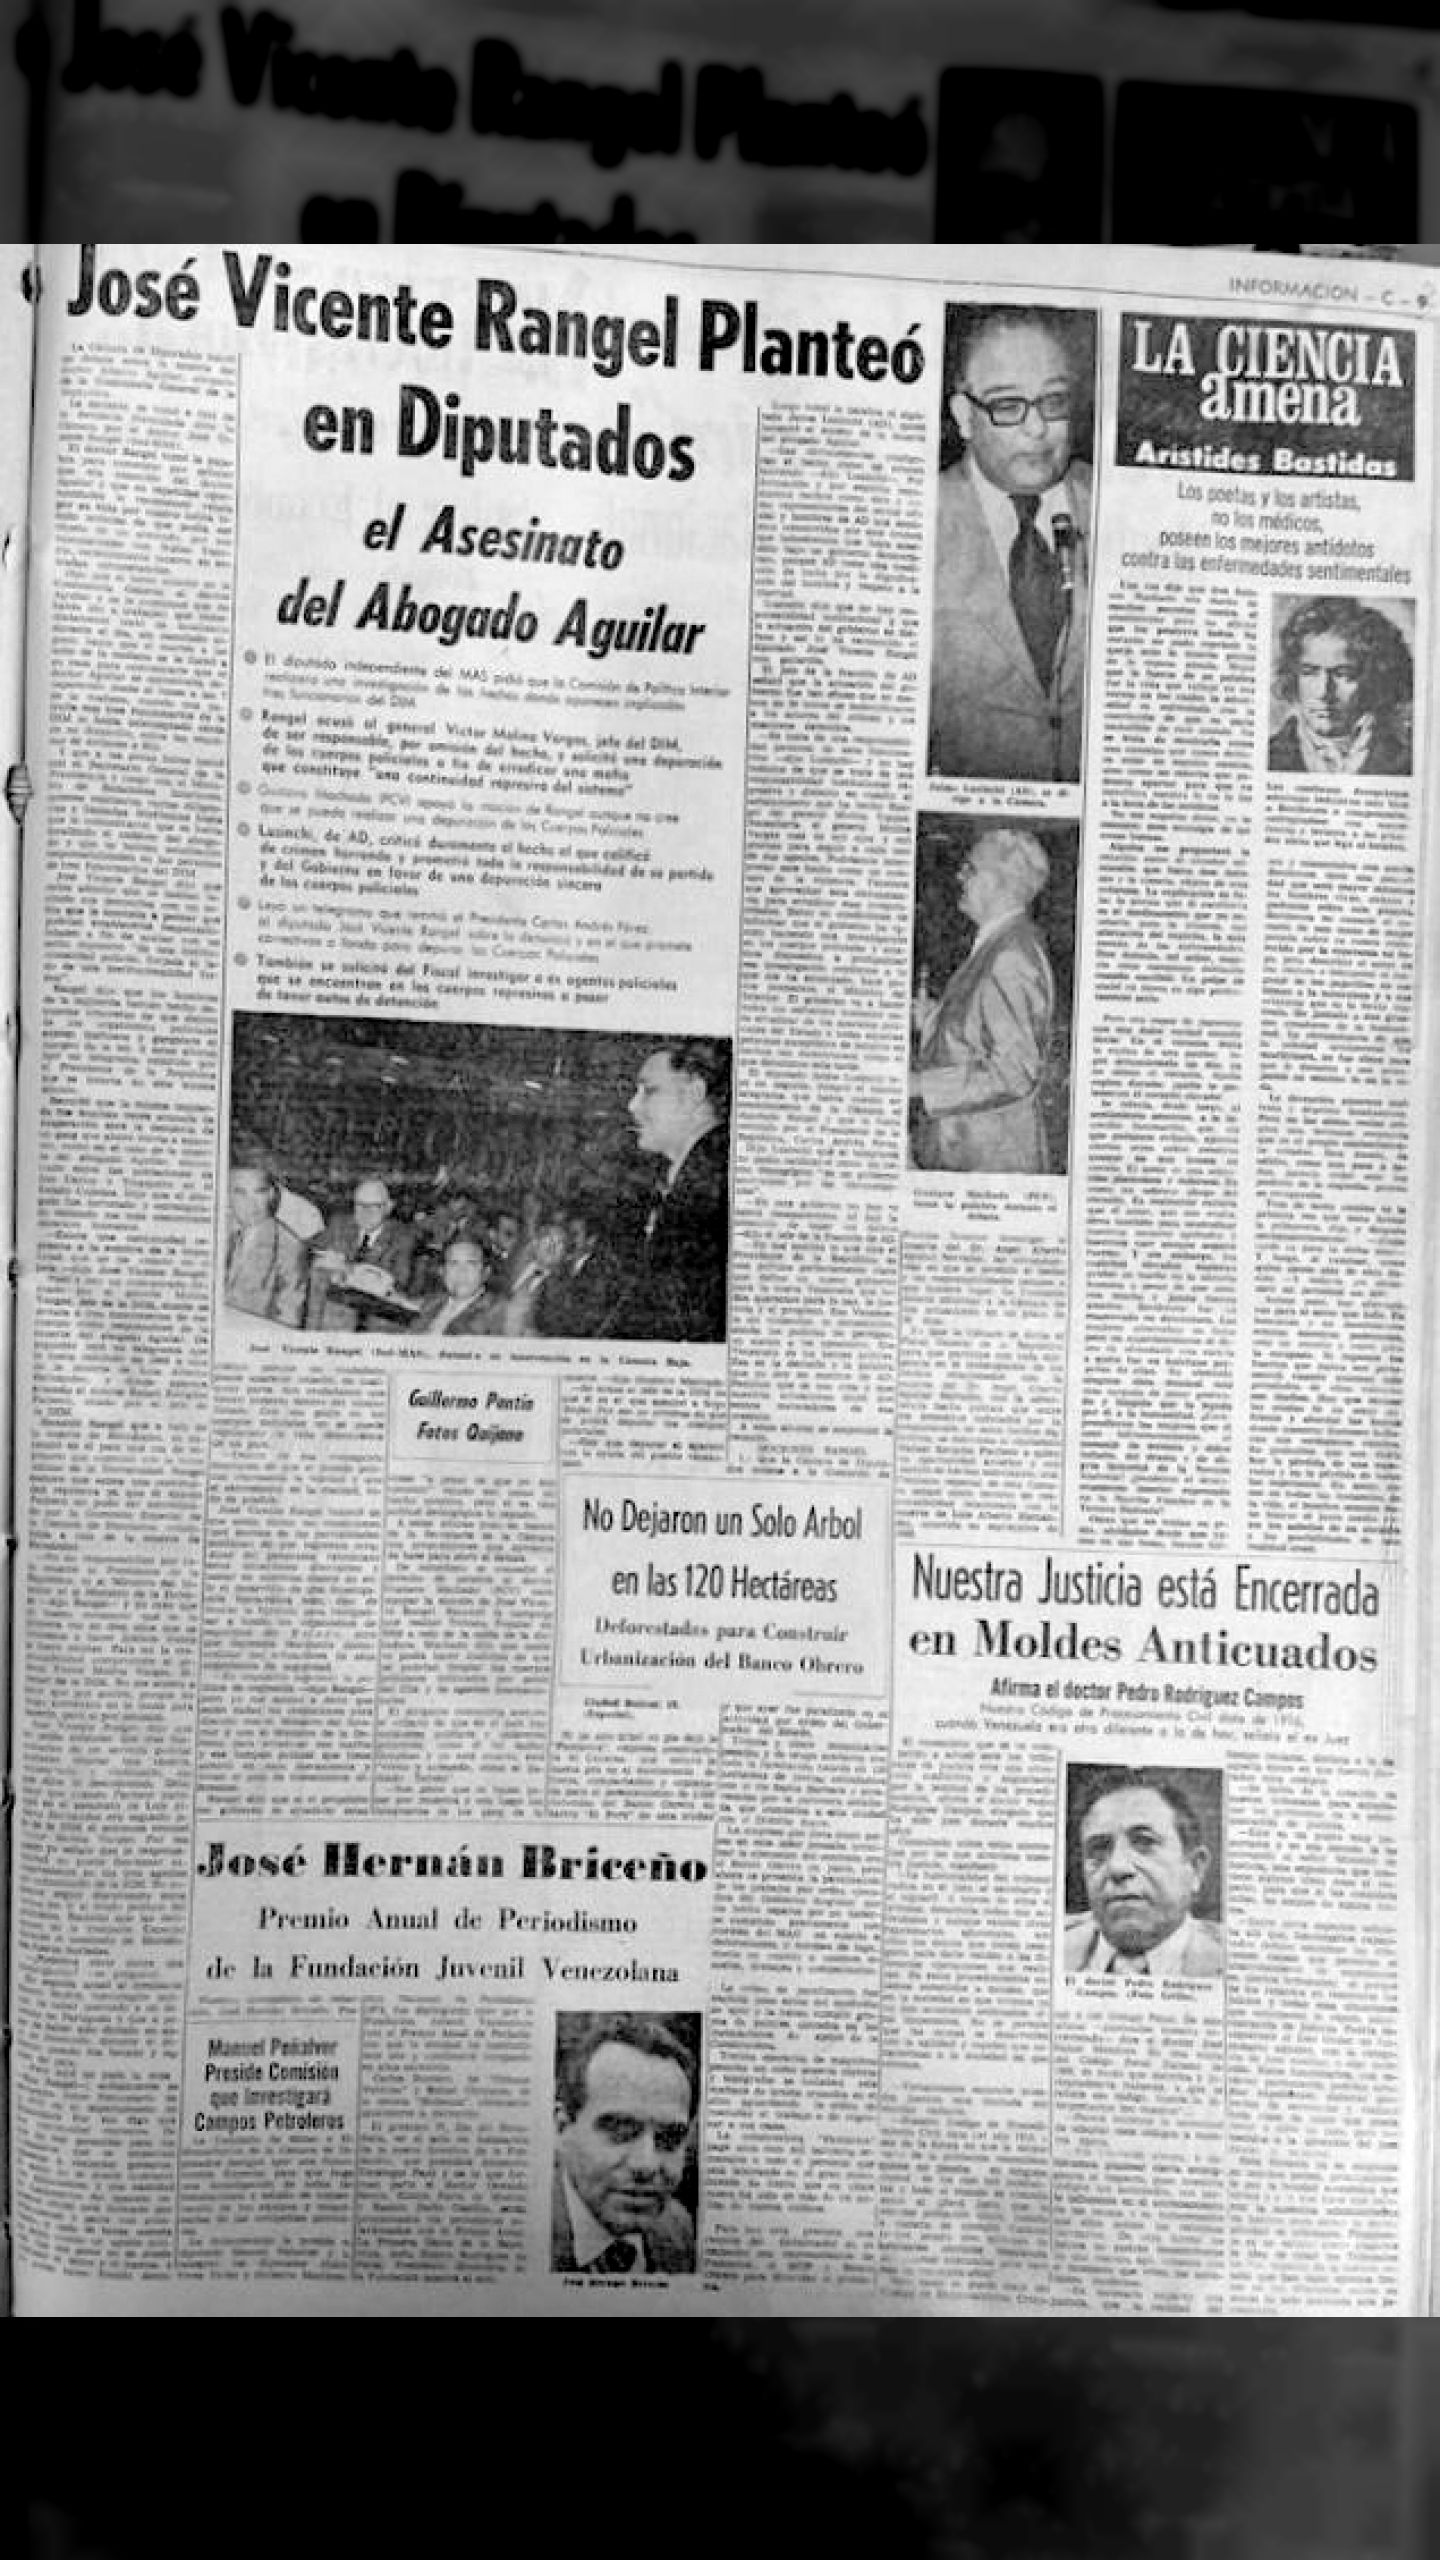 José Vicente Rangel planteó en Cámara de Diputados Asesinato del Abogado Aguilar (El Nacional, 20 de junio de 1974)